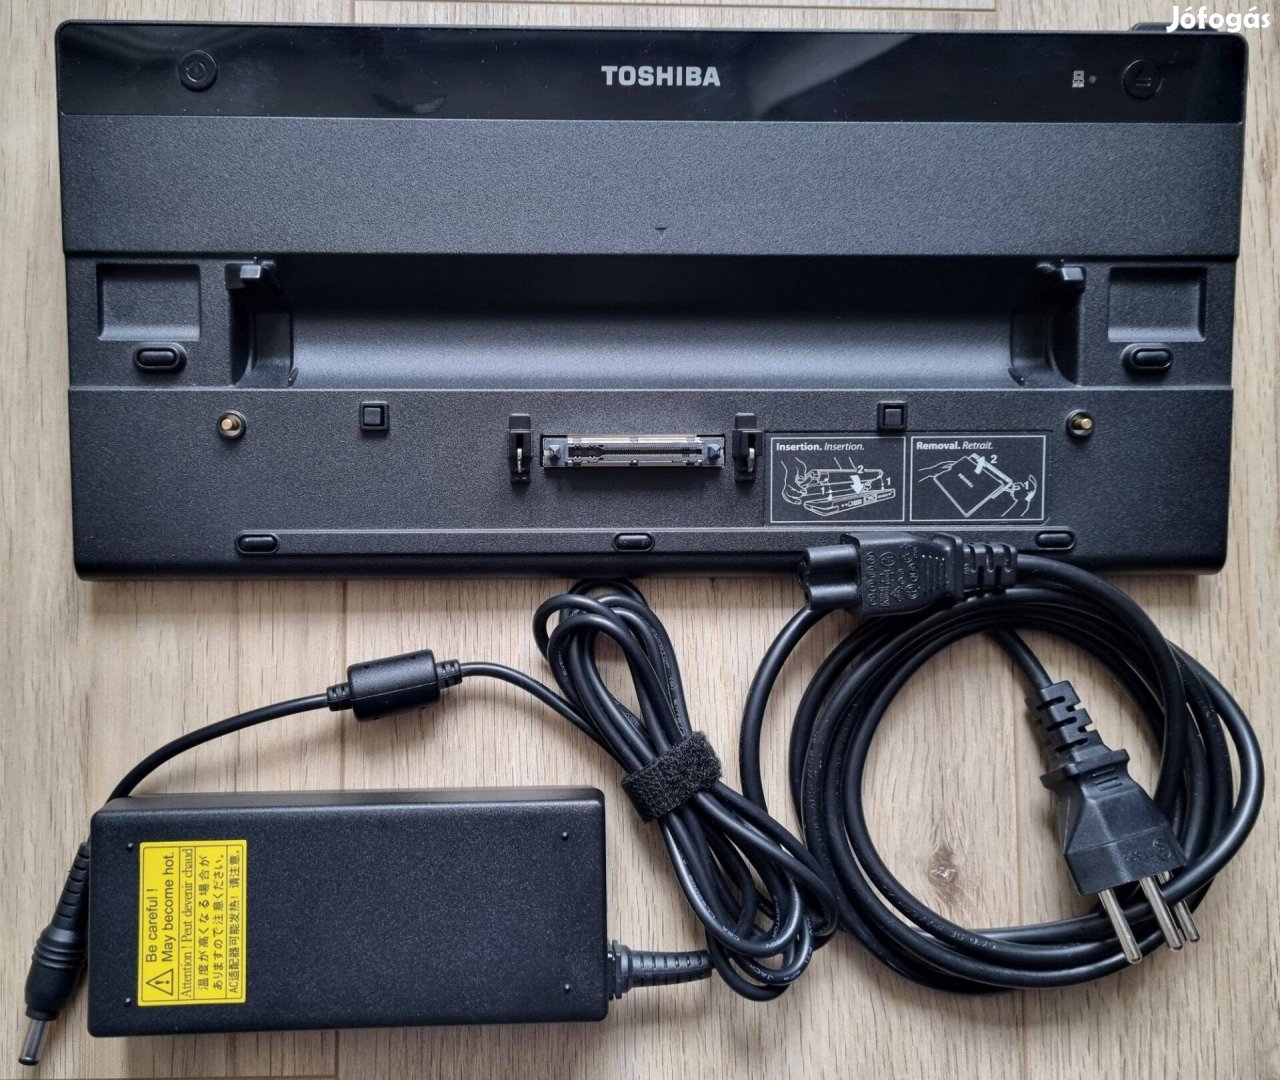 Toshiba dokkoló port replikátor + áramadapter - újszerű